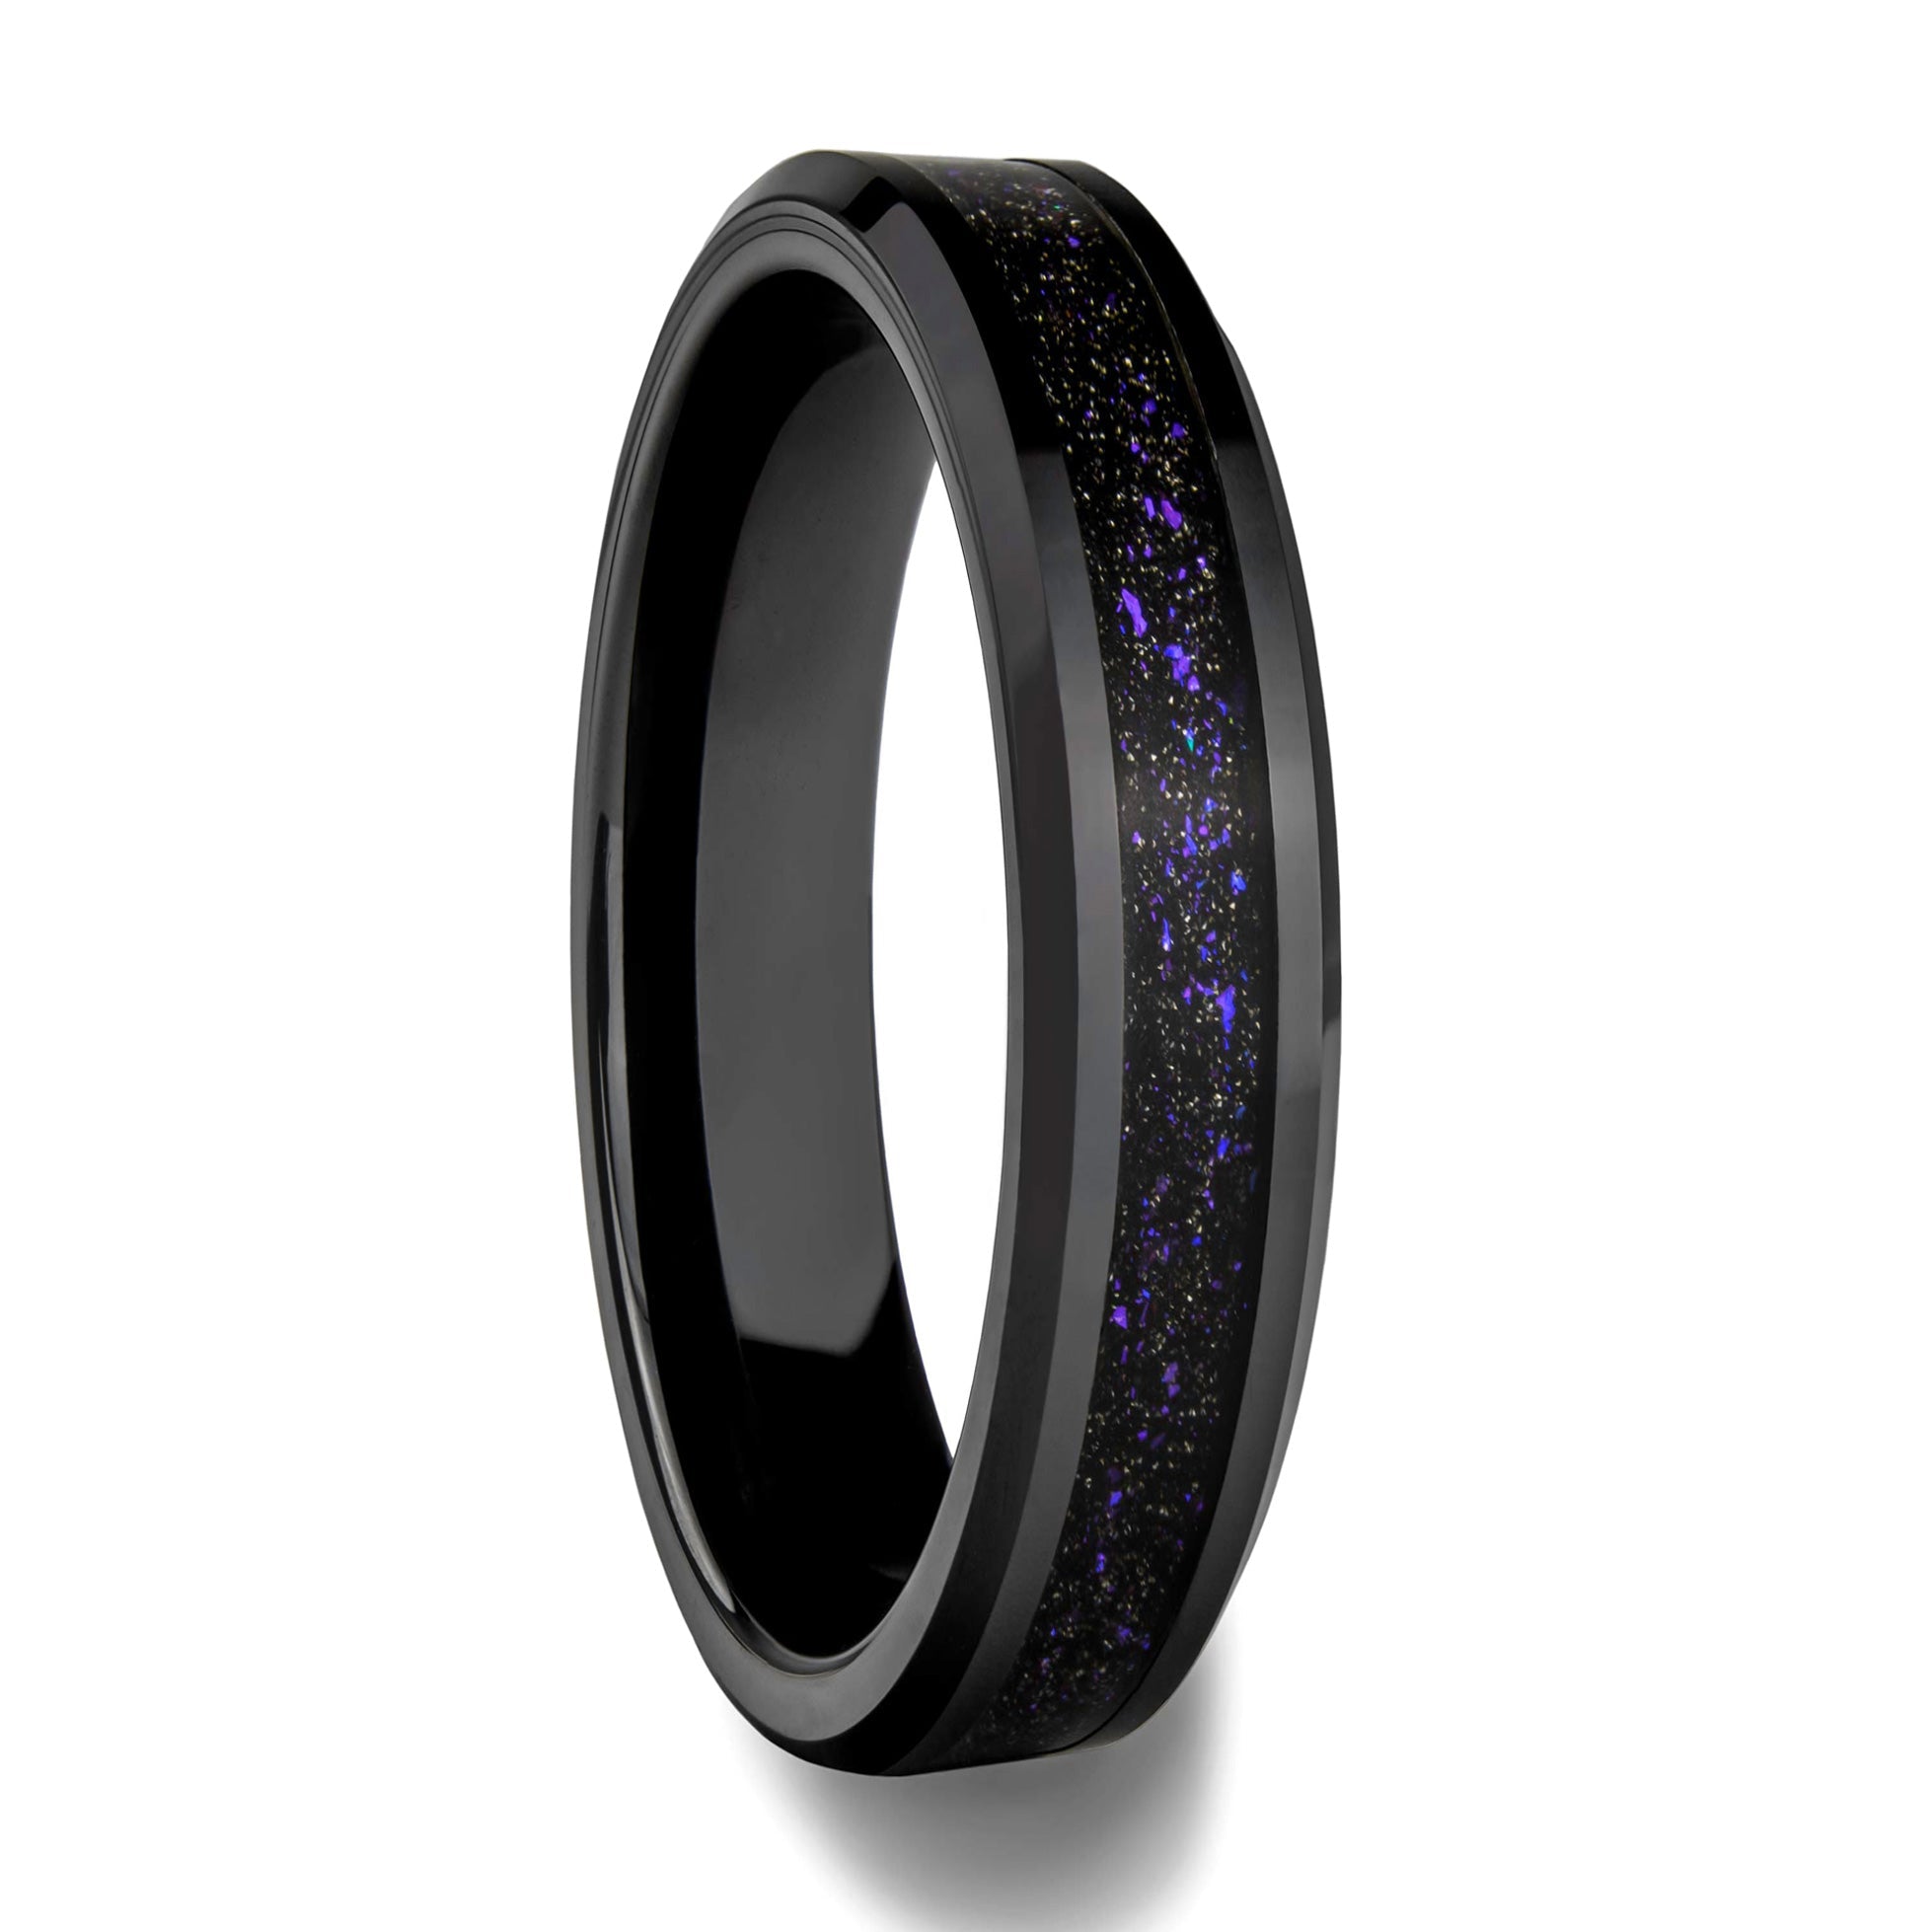 Stylish Daily Party Biker Alloy Round Purple Black Crystal Ring For Men,  हीरे की सगाई की अंगूठी, डायमंड इंगेजमेंट रिंग - AANYA LIFESTYLE, Mumbai |  ID: 27150162833